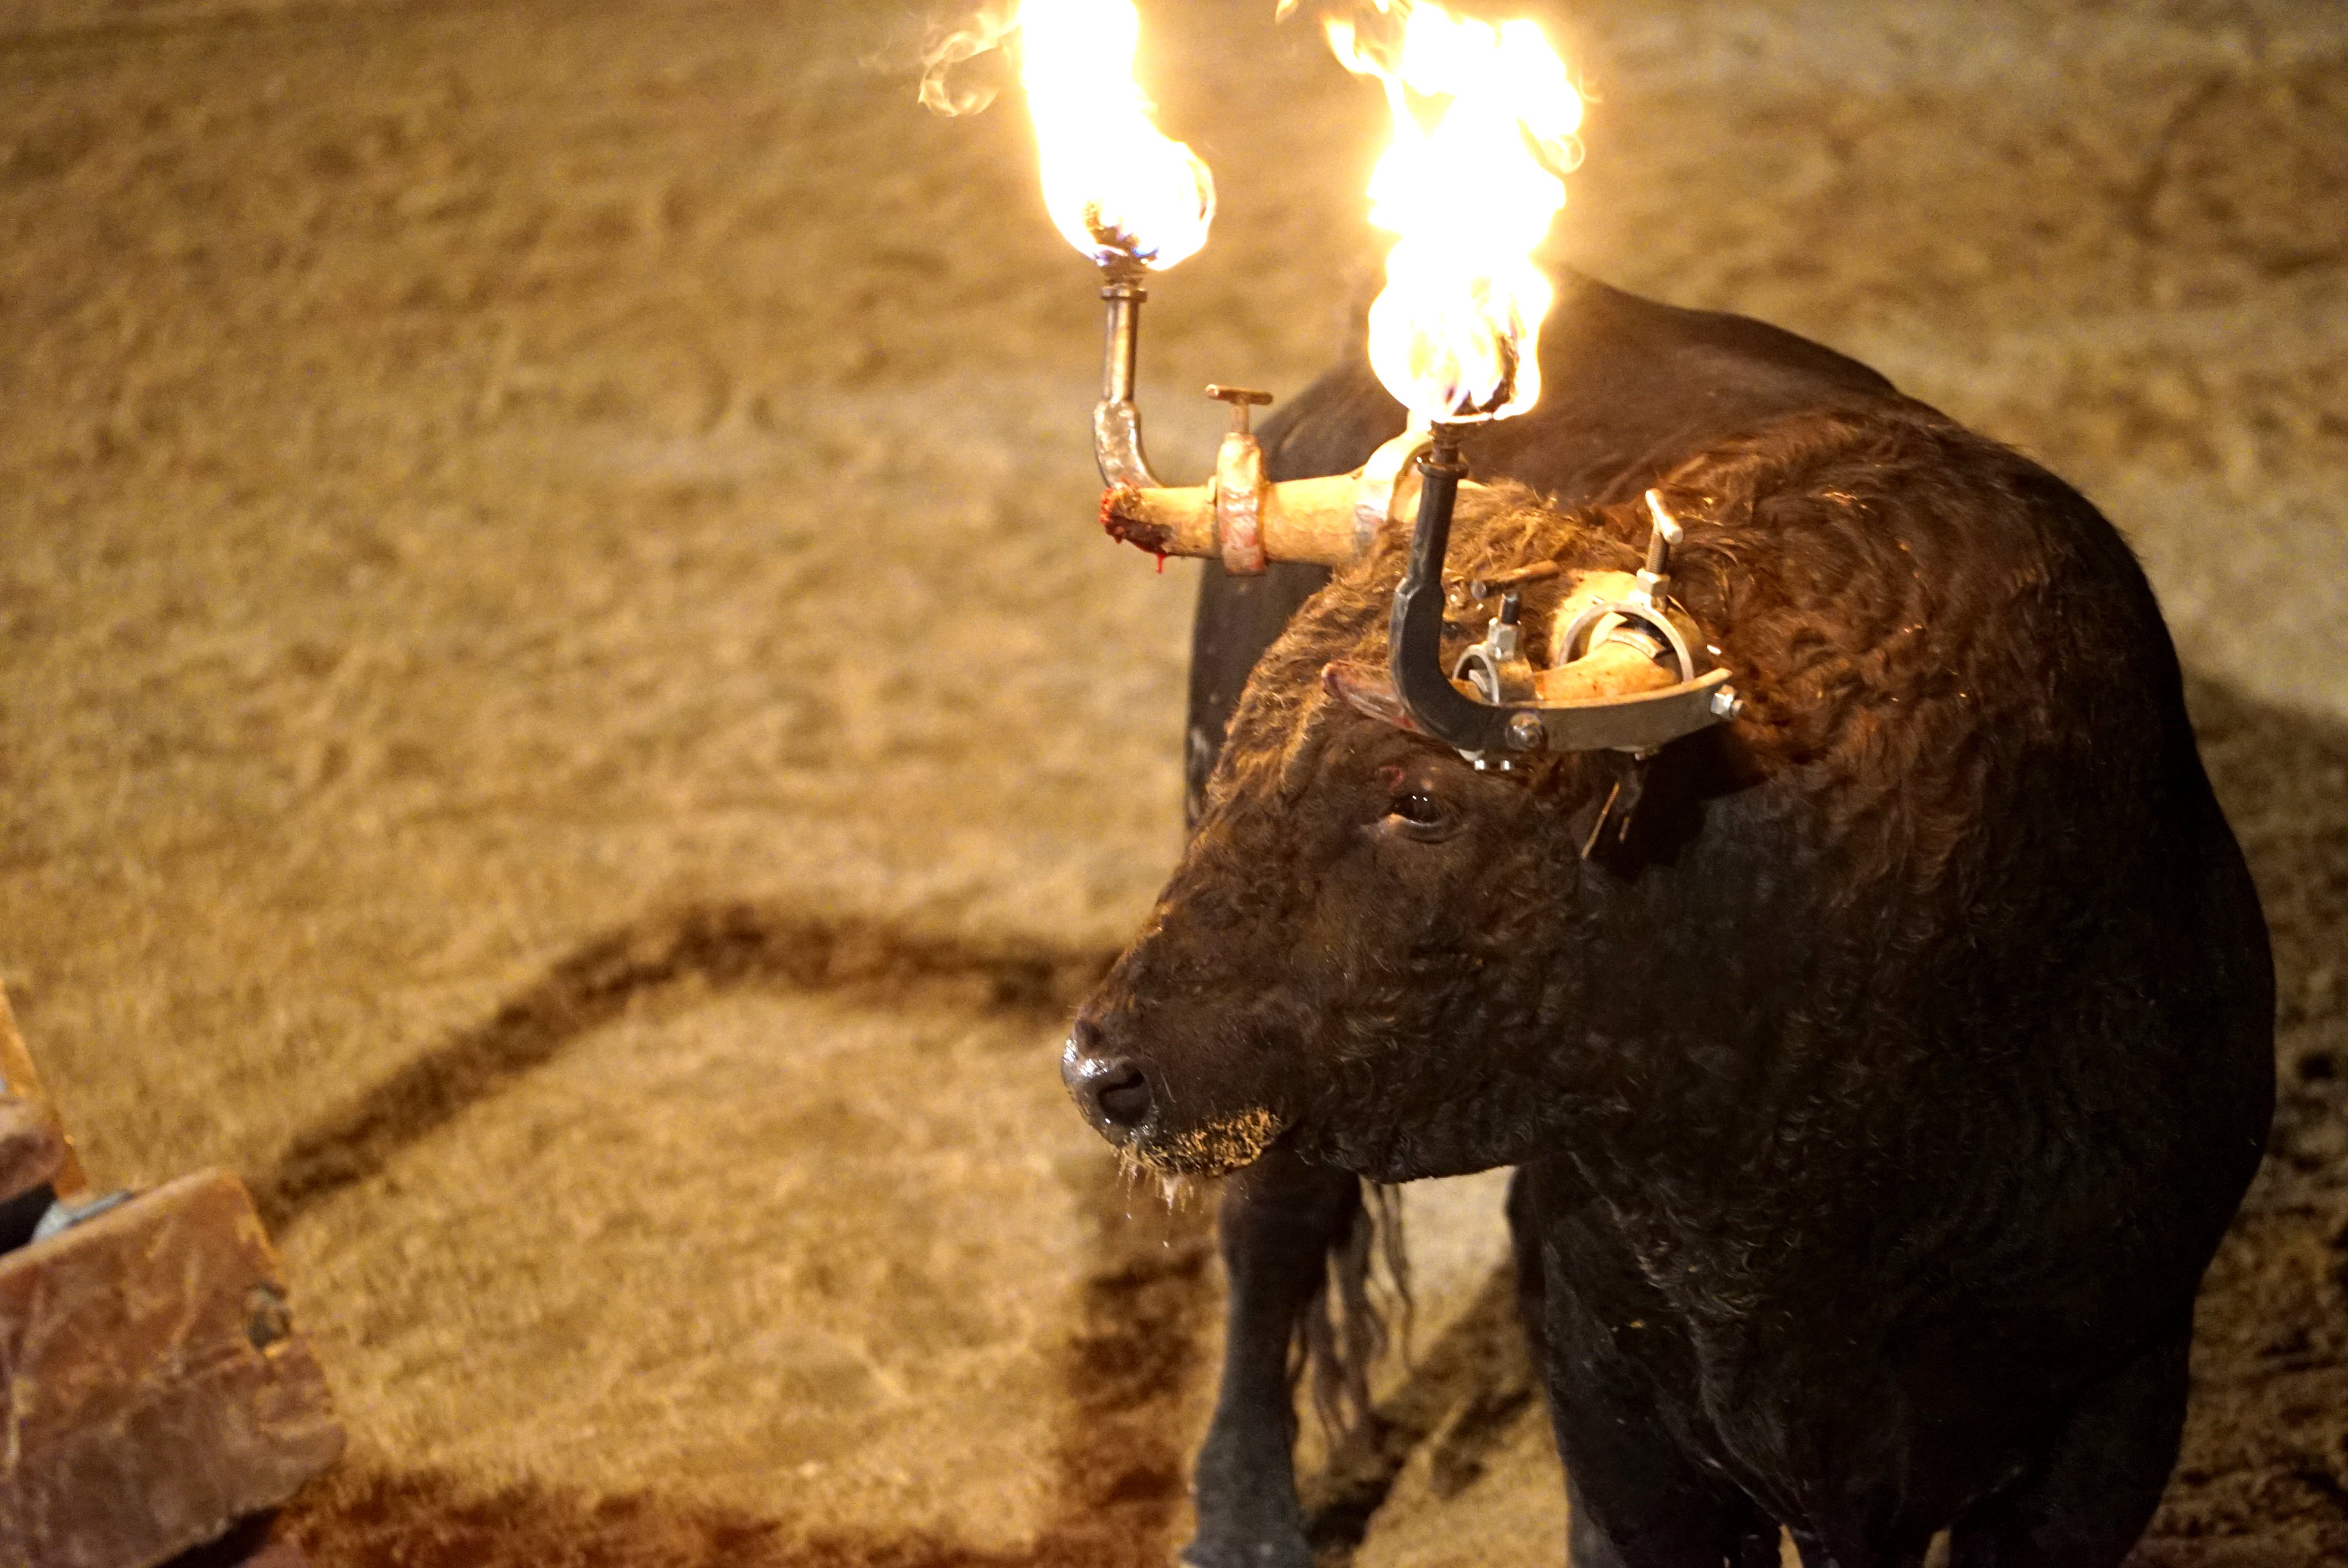 Animalistas denuncian una agresión en el bou embolat de Camarles